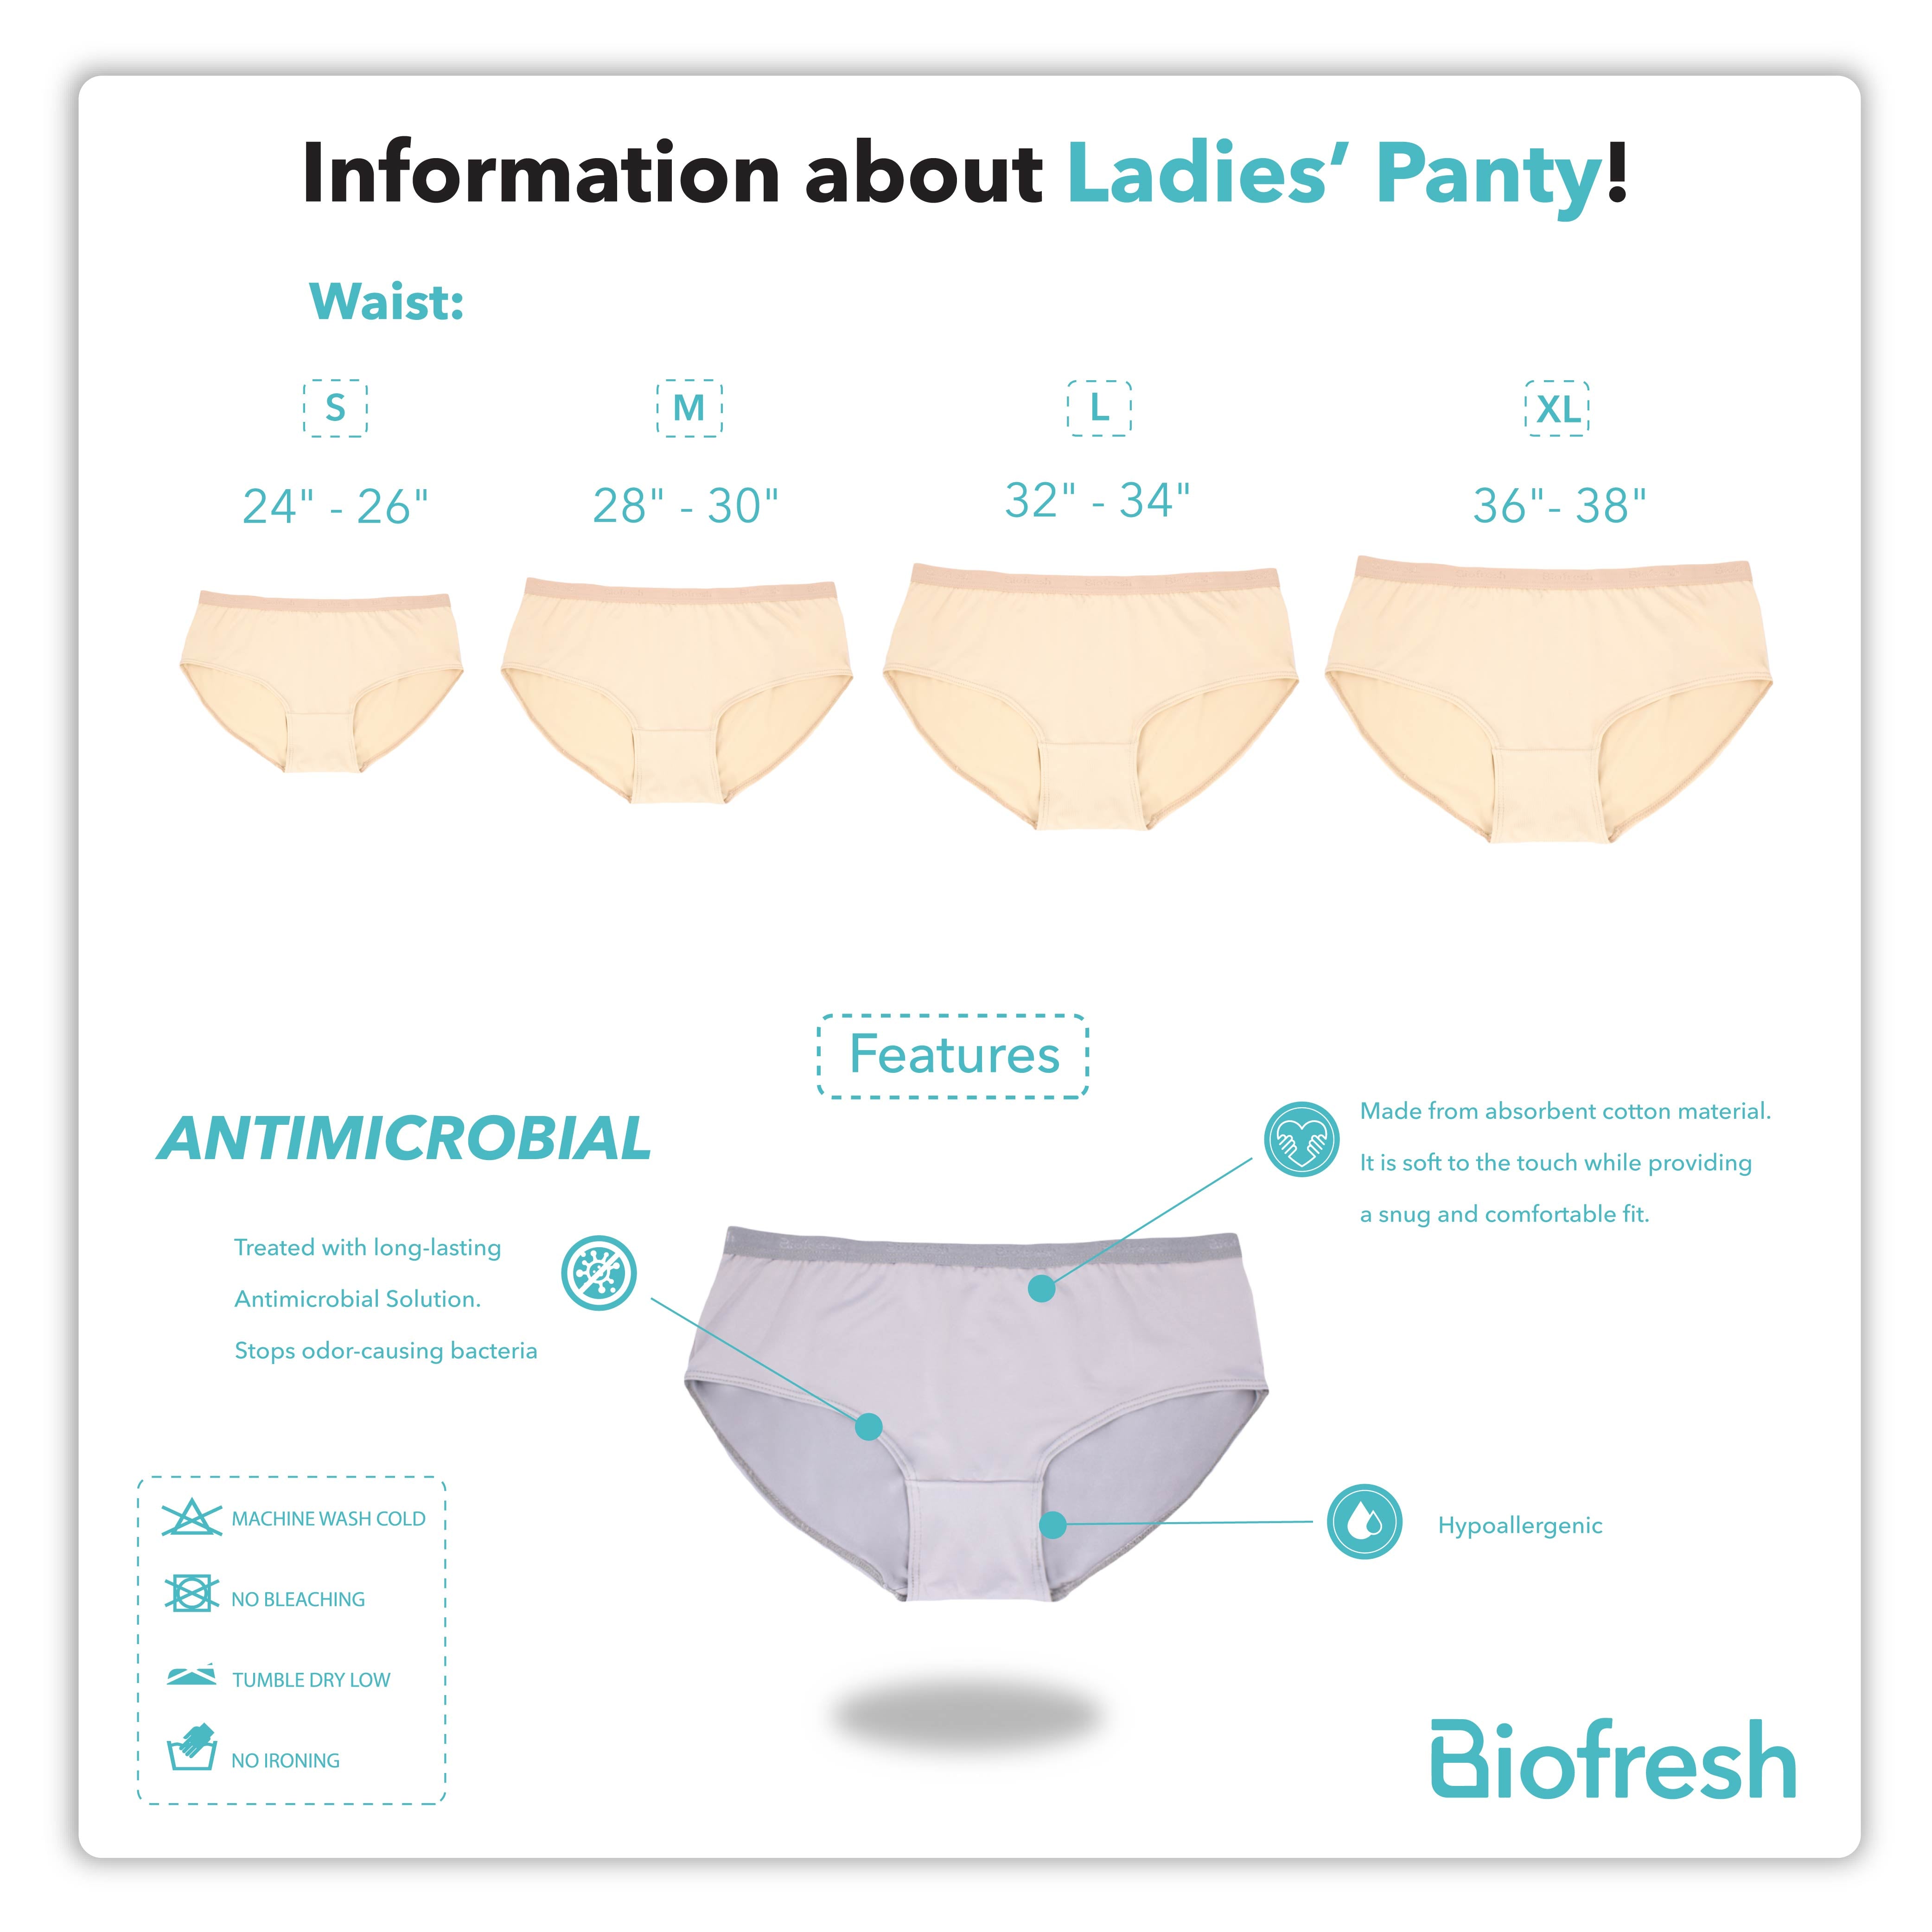 Biofresh Ladies Antimicrobial Light Flow Leak Proof Menstrual